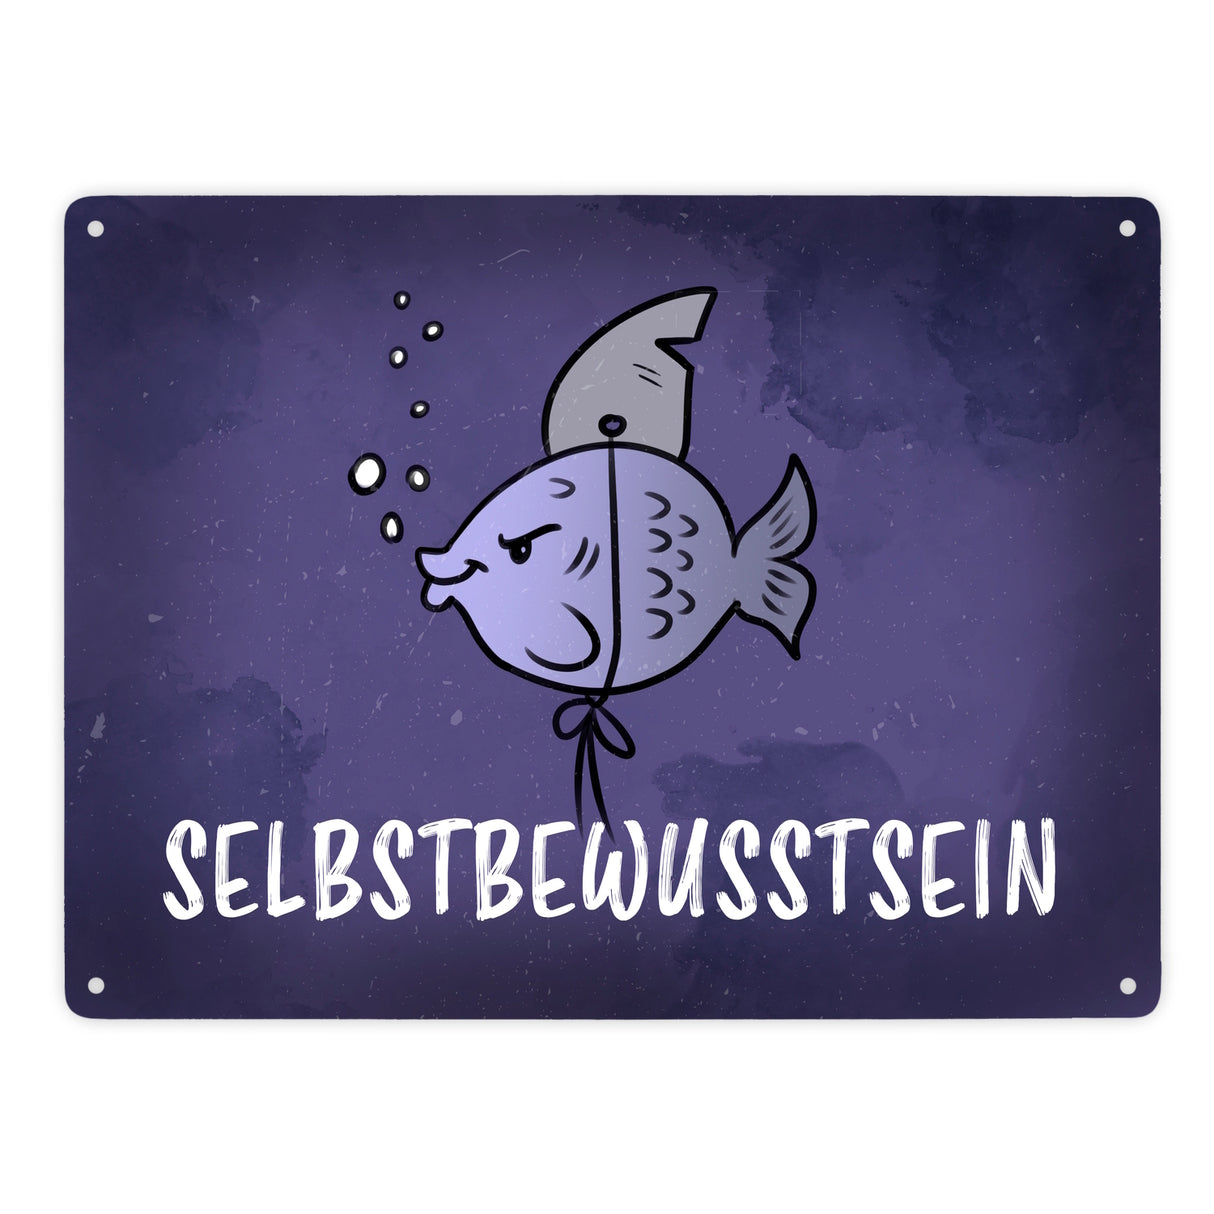 Selbstbewusstsein - Metallschild mit dem gewitzten Fisch mit Haifischflosse